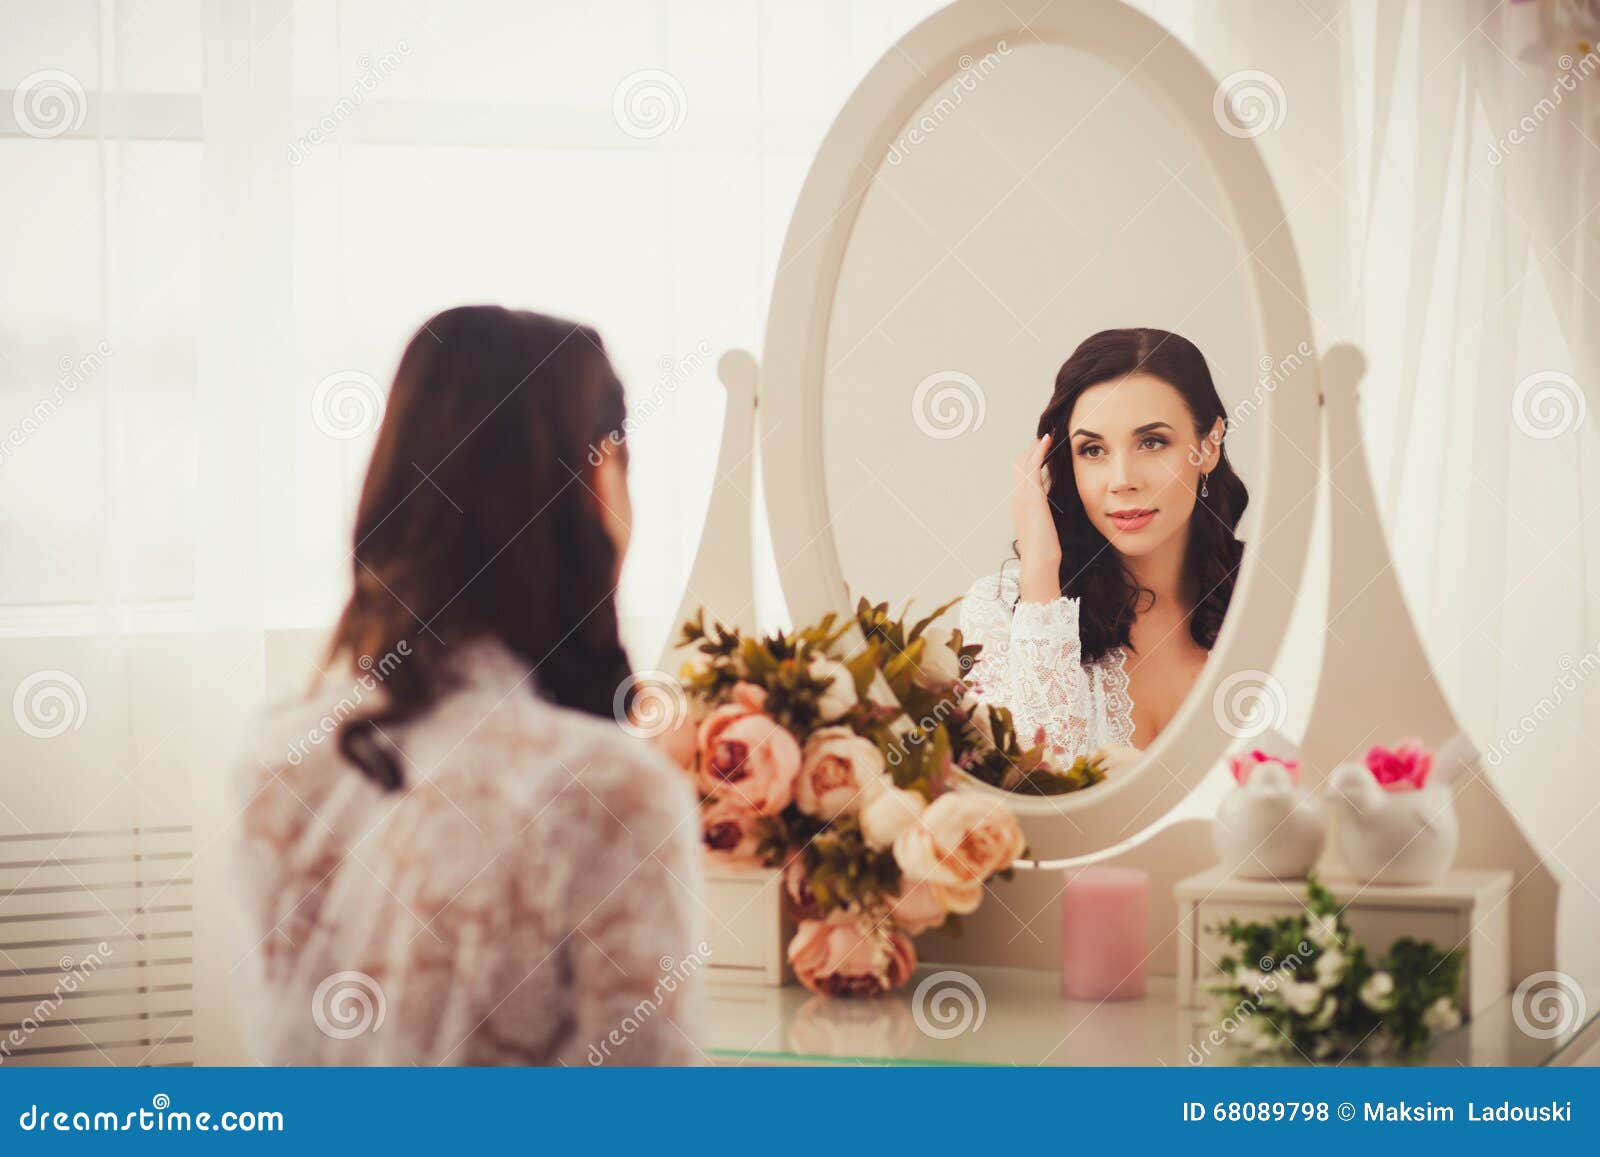 Женщина в зеркале содержание чем закончится. Отражение женщины в зеркале. Девушка в отражении зеркала. Женщина смотрит в зеркало. Любуется в зеркало.